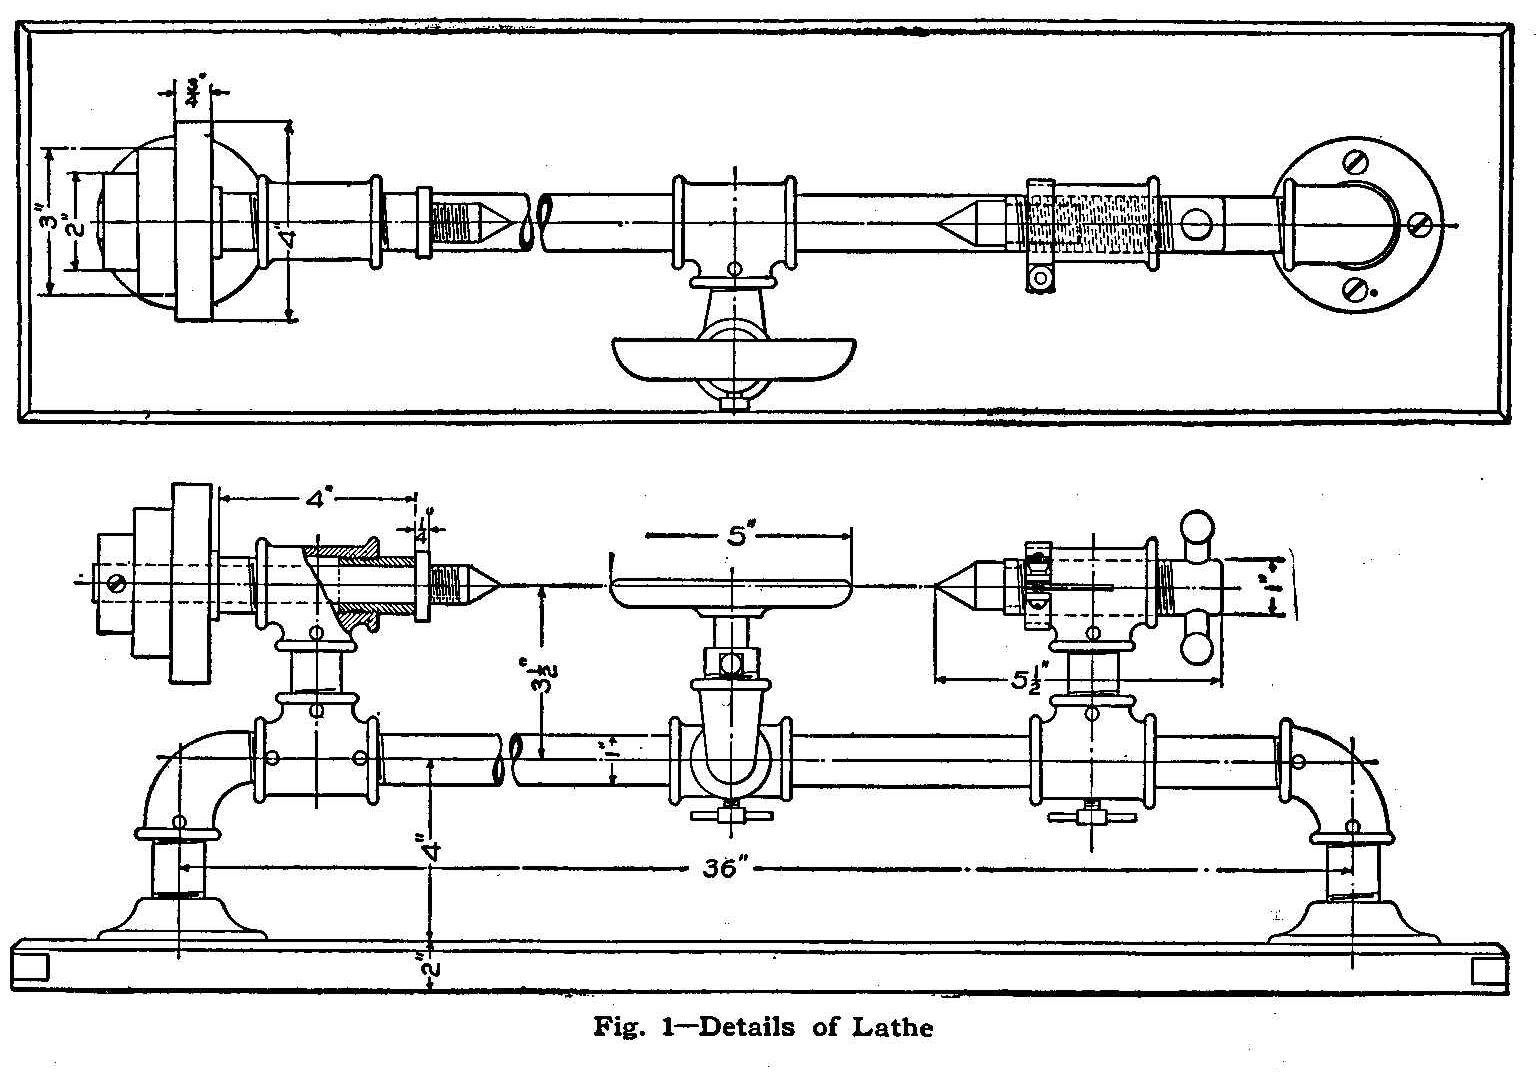 Fig. 1-Details of Lathe